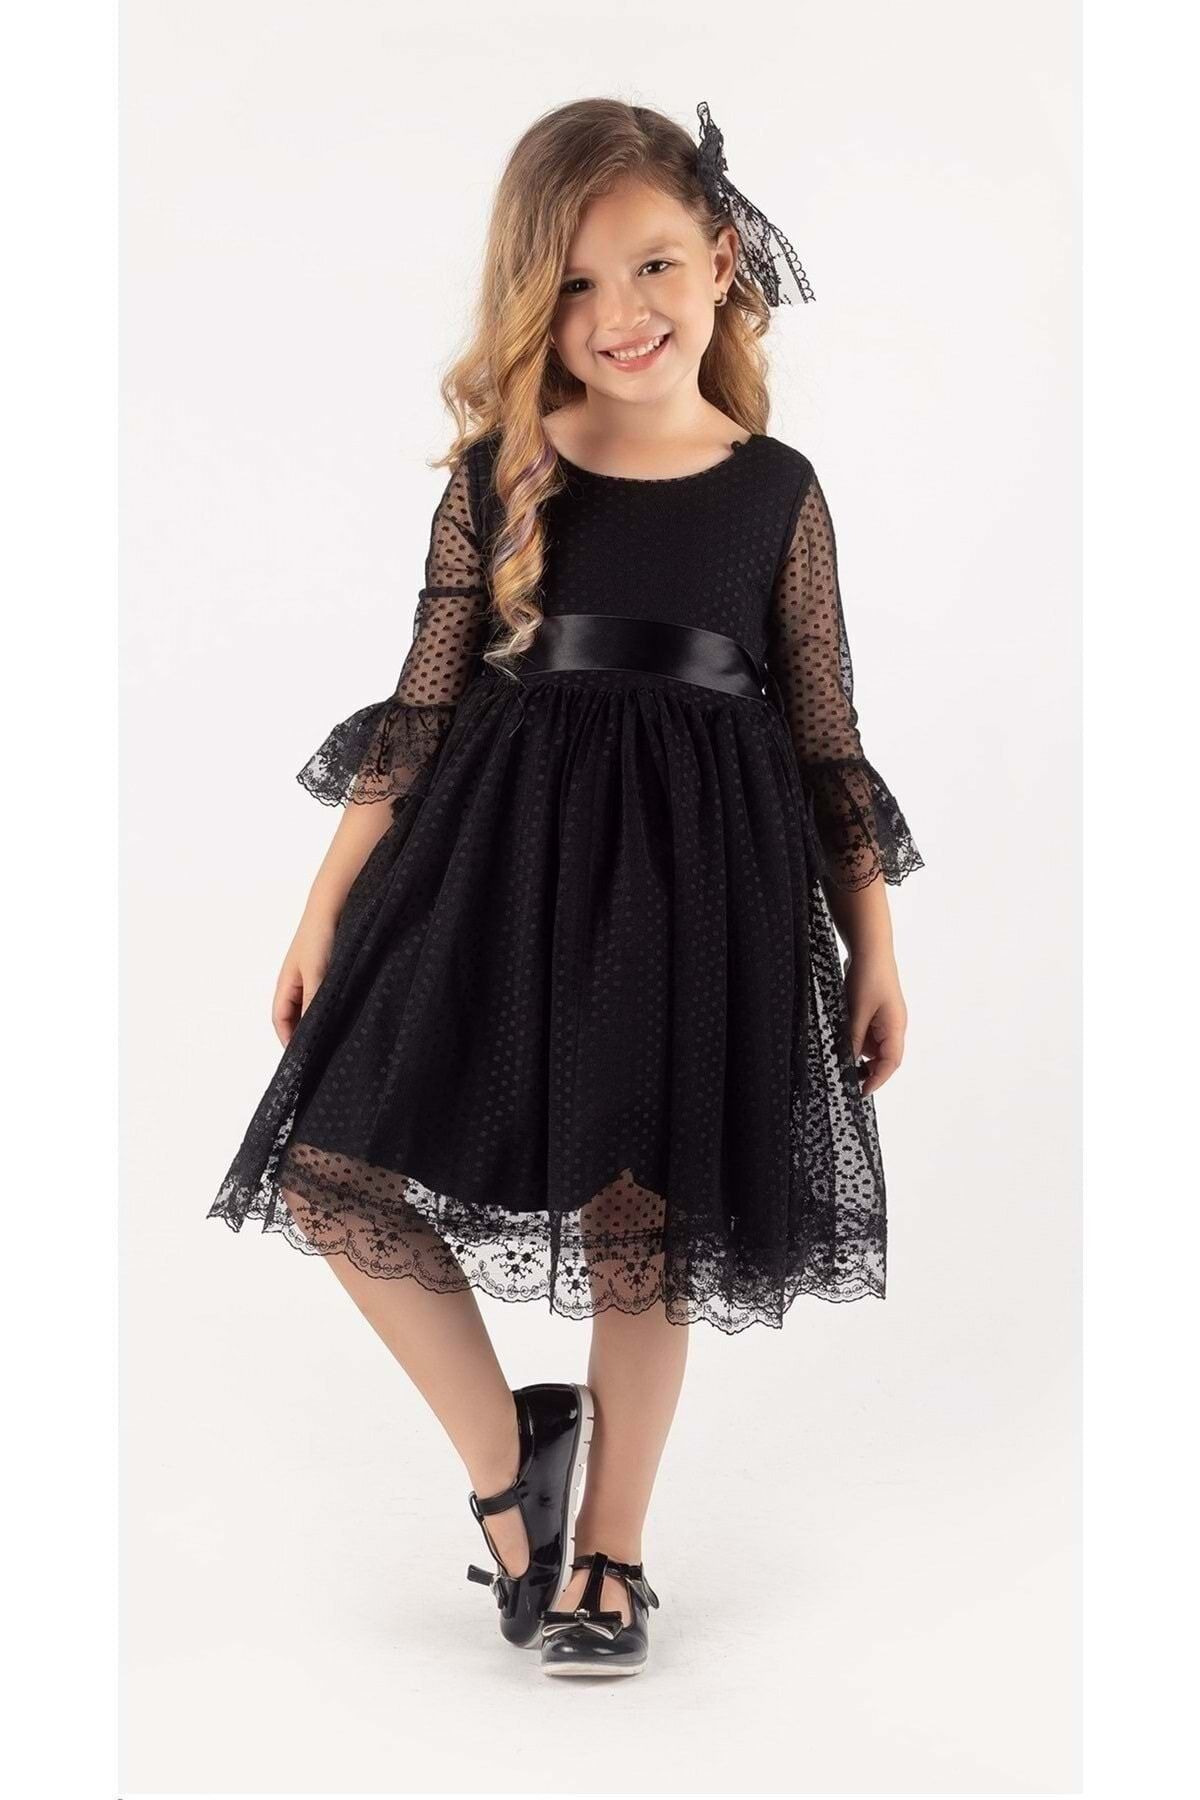 Mnk Rengarenk Fransız Dantel Tokalı Kız Çocuk Elbise Siyah